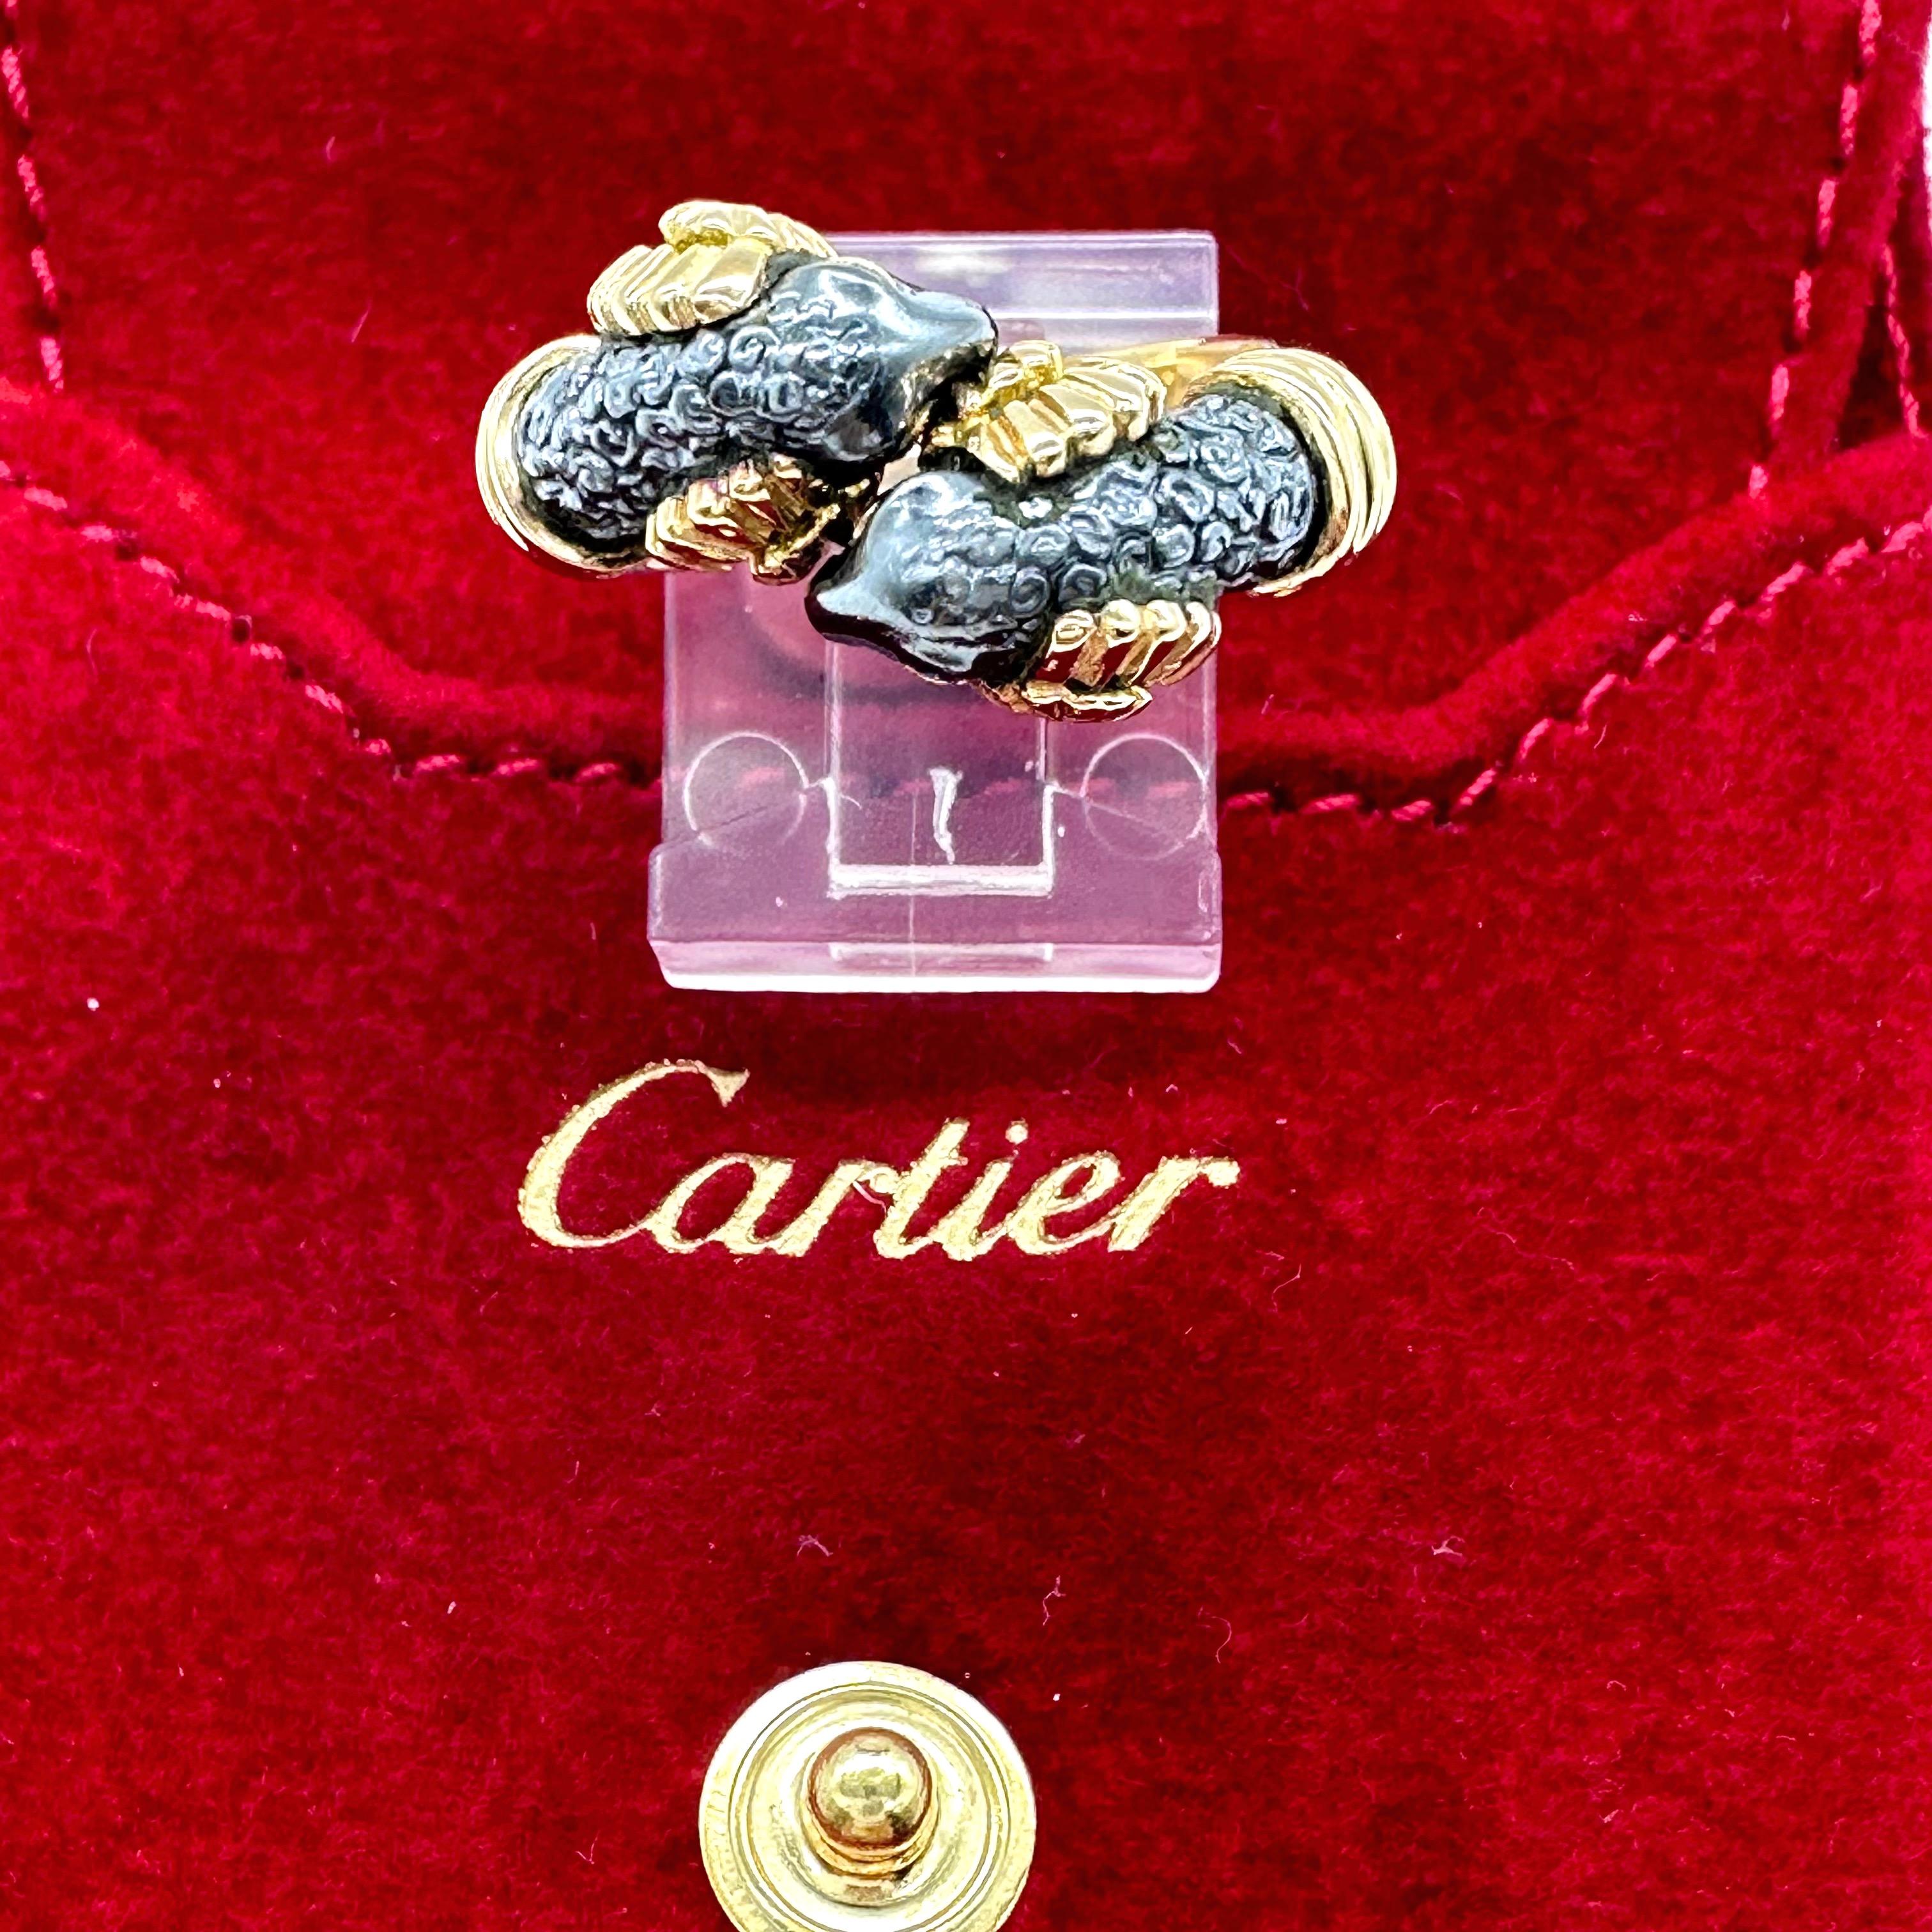 Cartier circa 1990 Silverioum Ram's Head Bypass 18 Karat Yellow Gold Ring For Sale 1